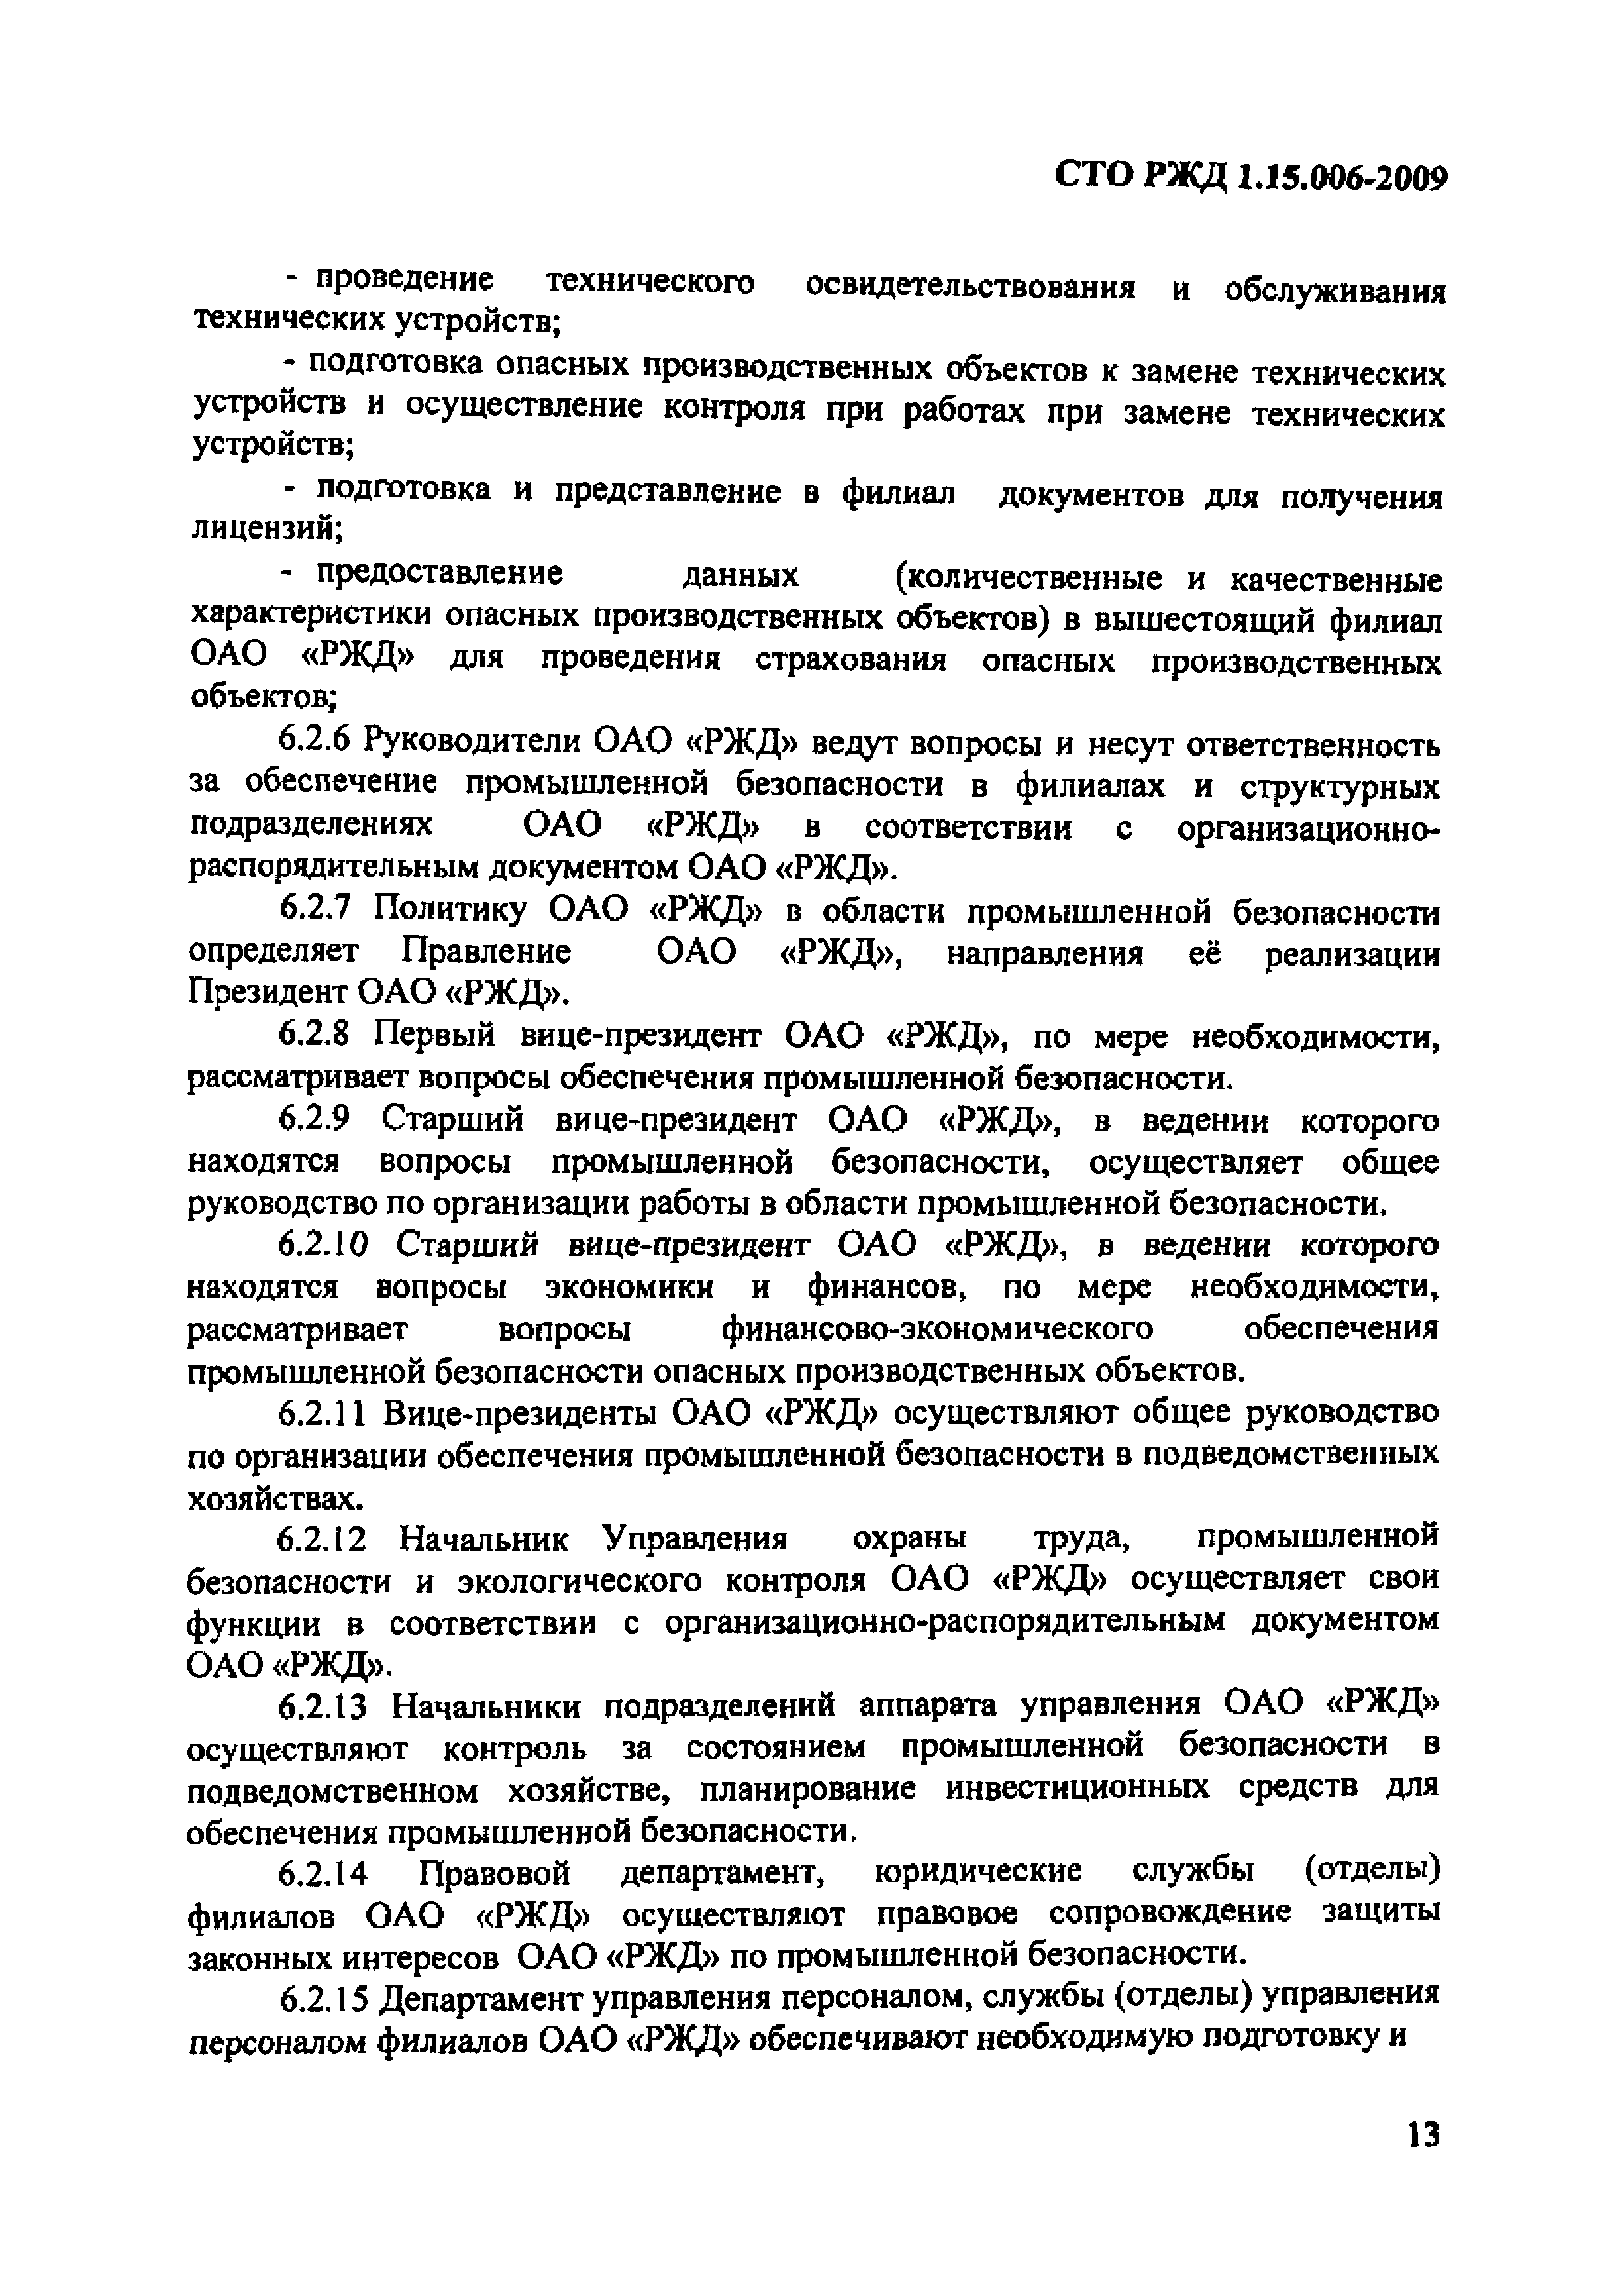 СТО РЖД 1.15.006-2009